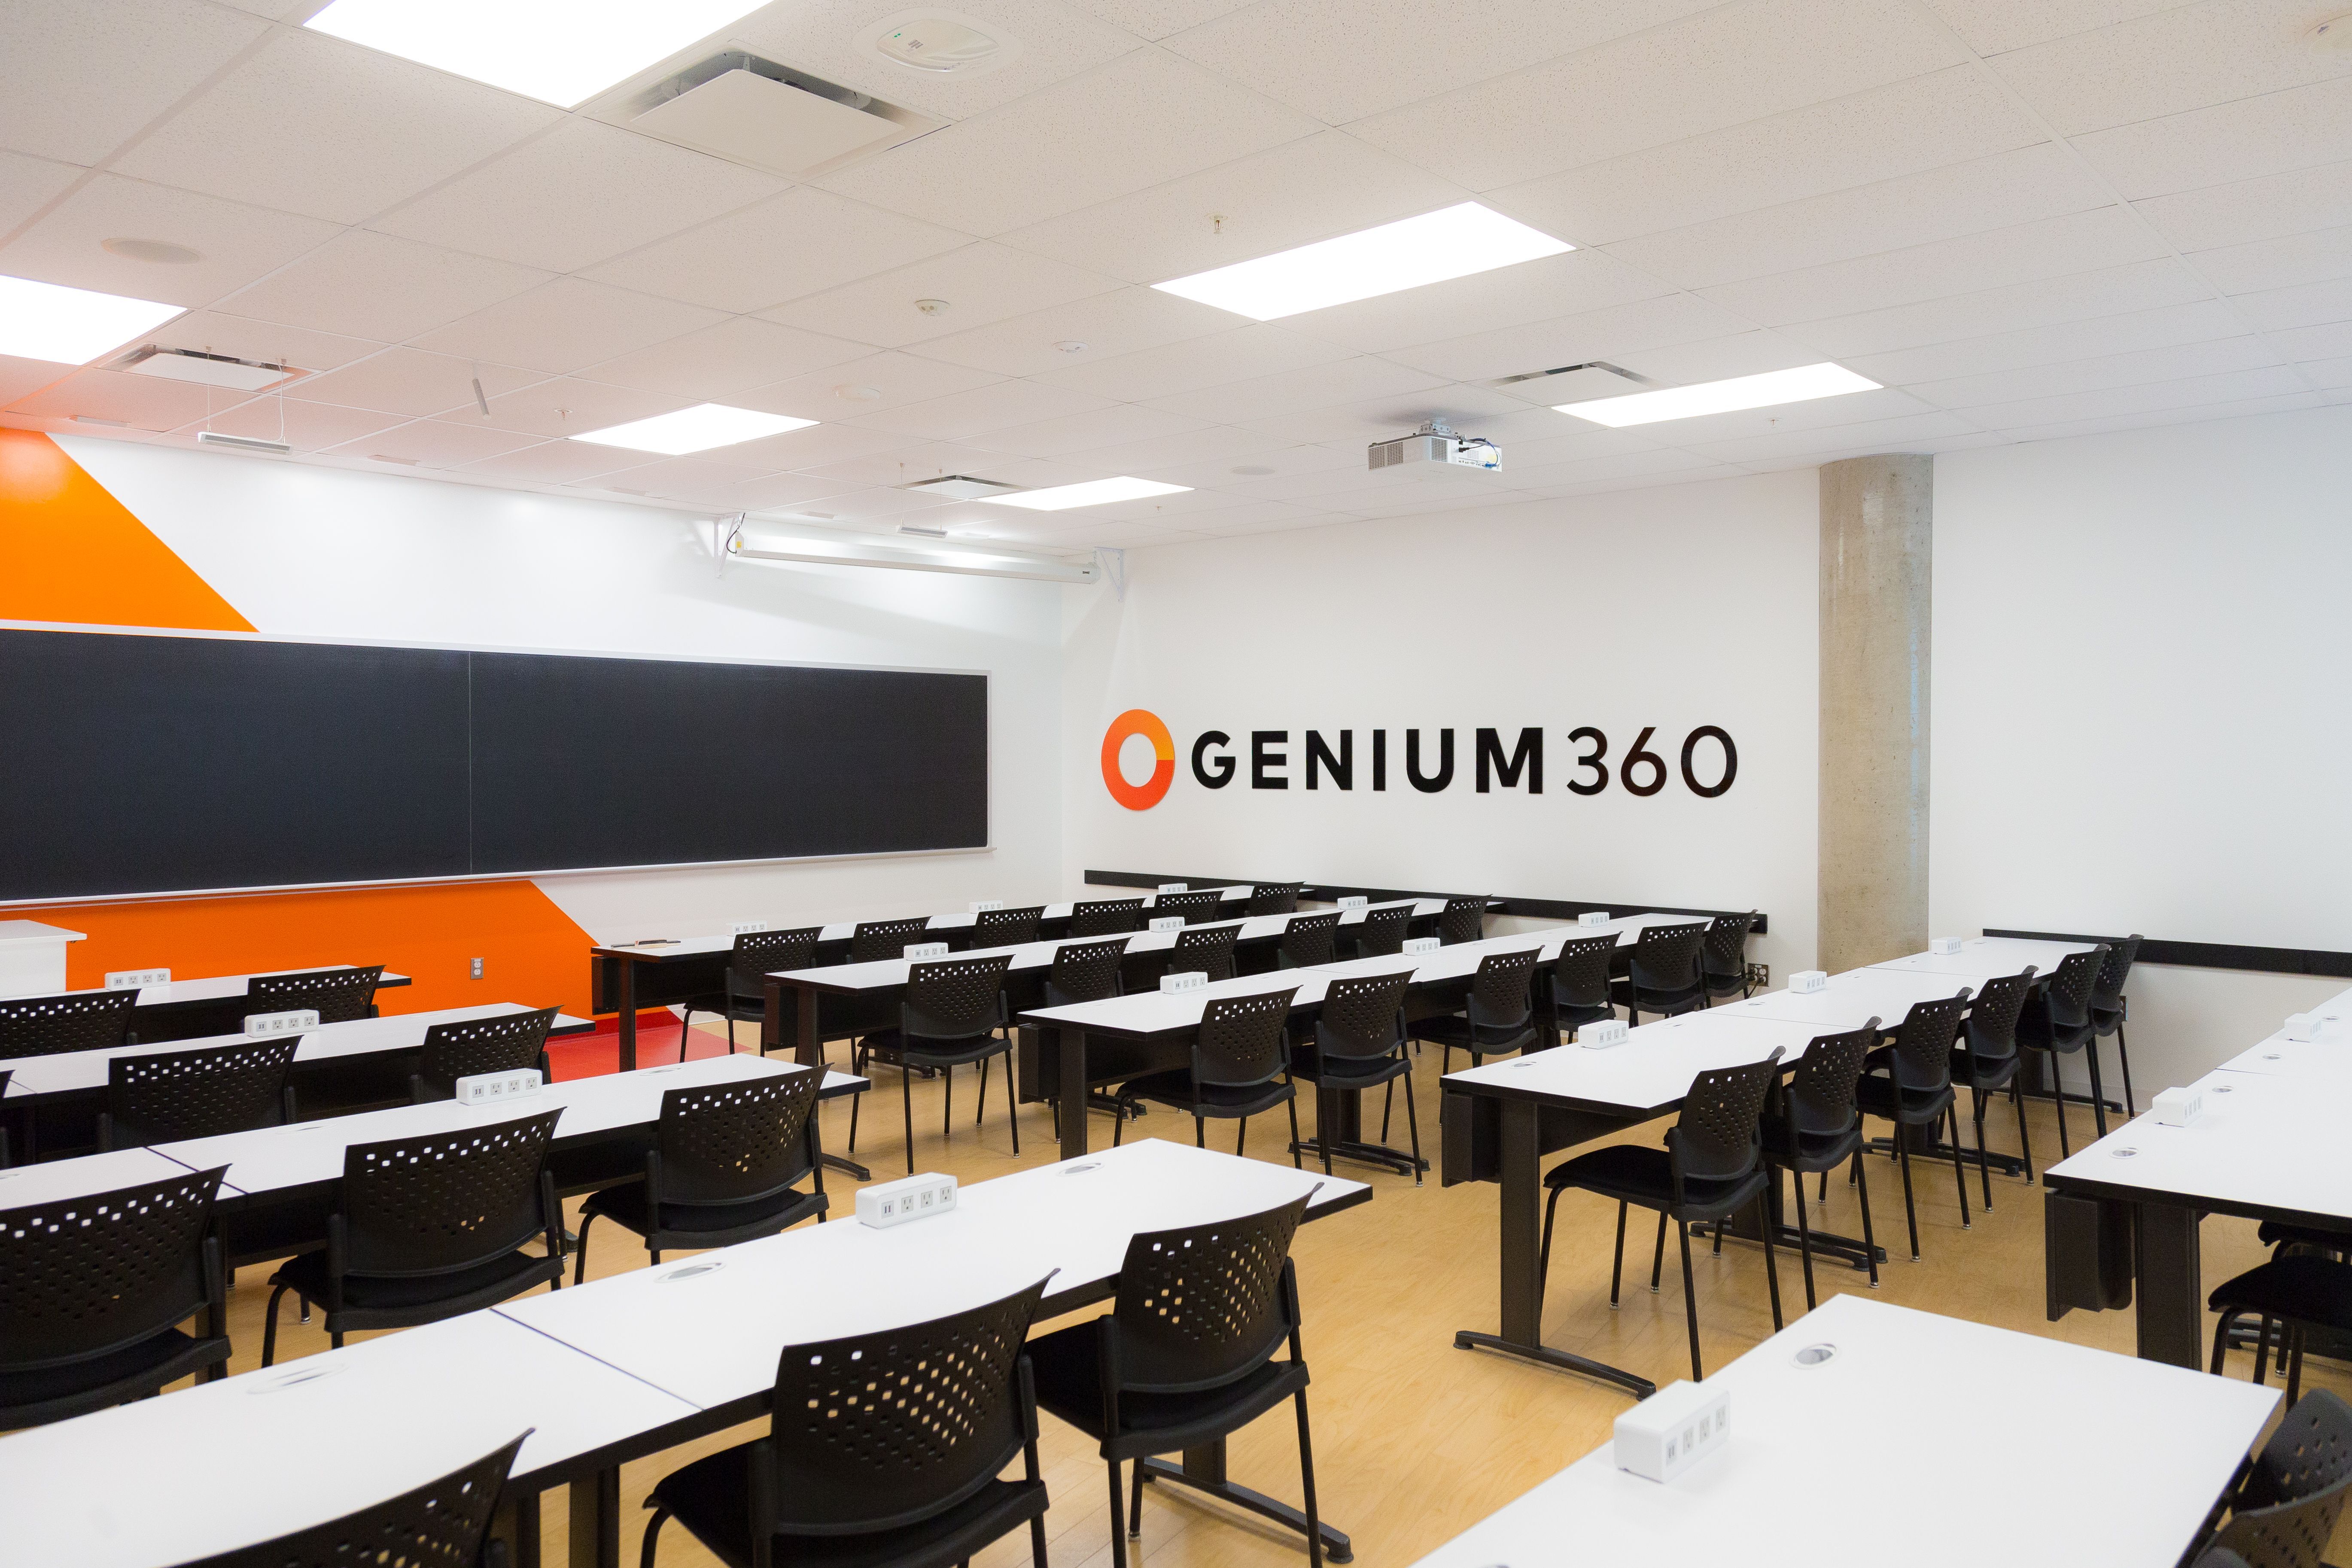 Salle de classe moderne avec mobilier noir et décoration orange.